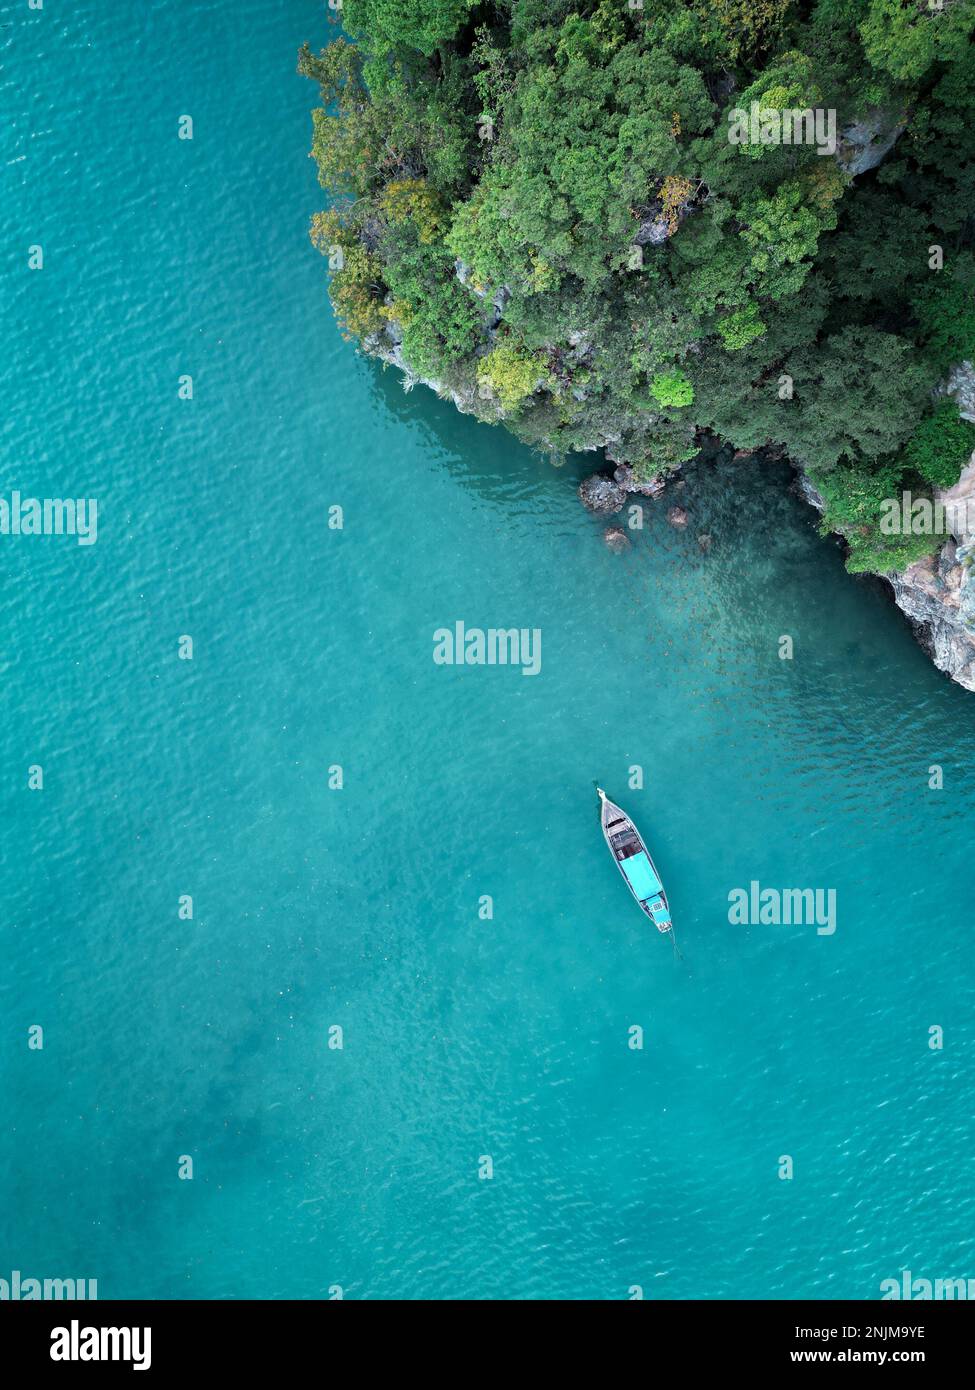 Un drone de chute a tiré sur un bateau à longue queue dans la mer près d'une falaise à Krabi, en Thaïlande Banque D'Images